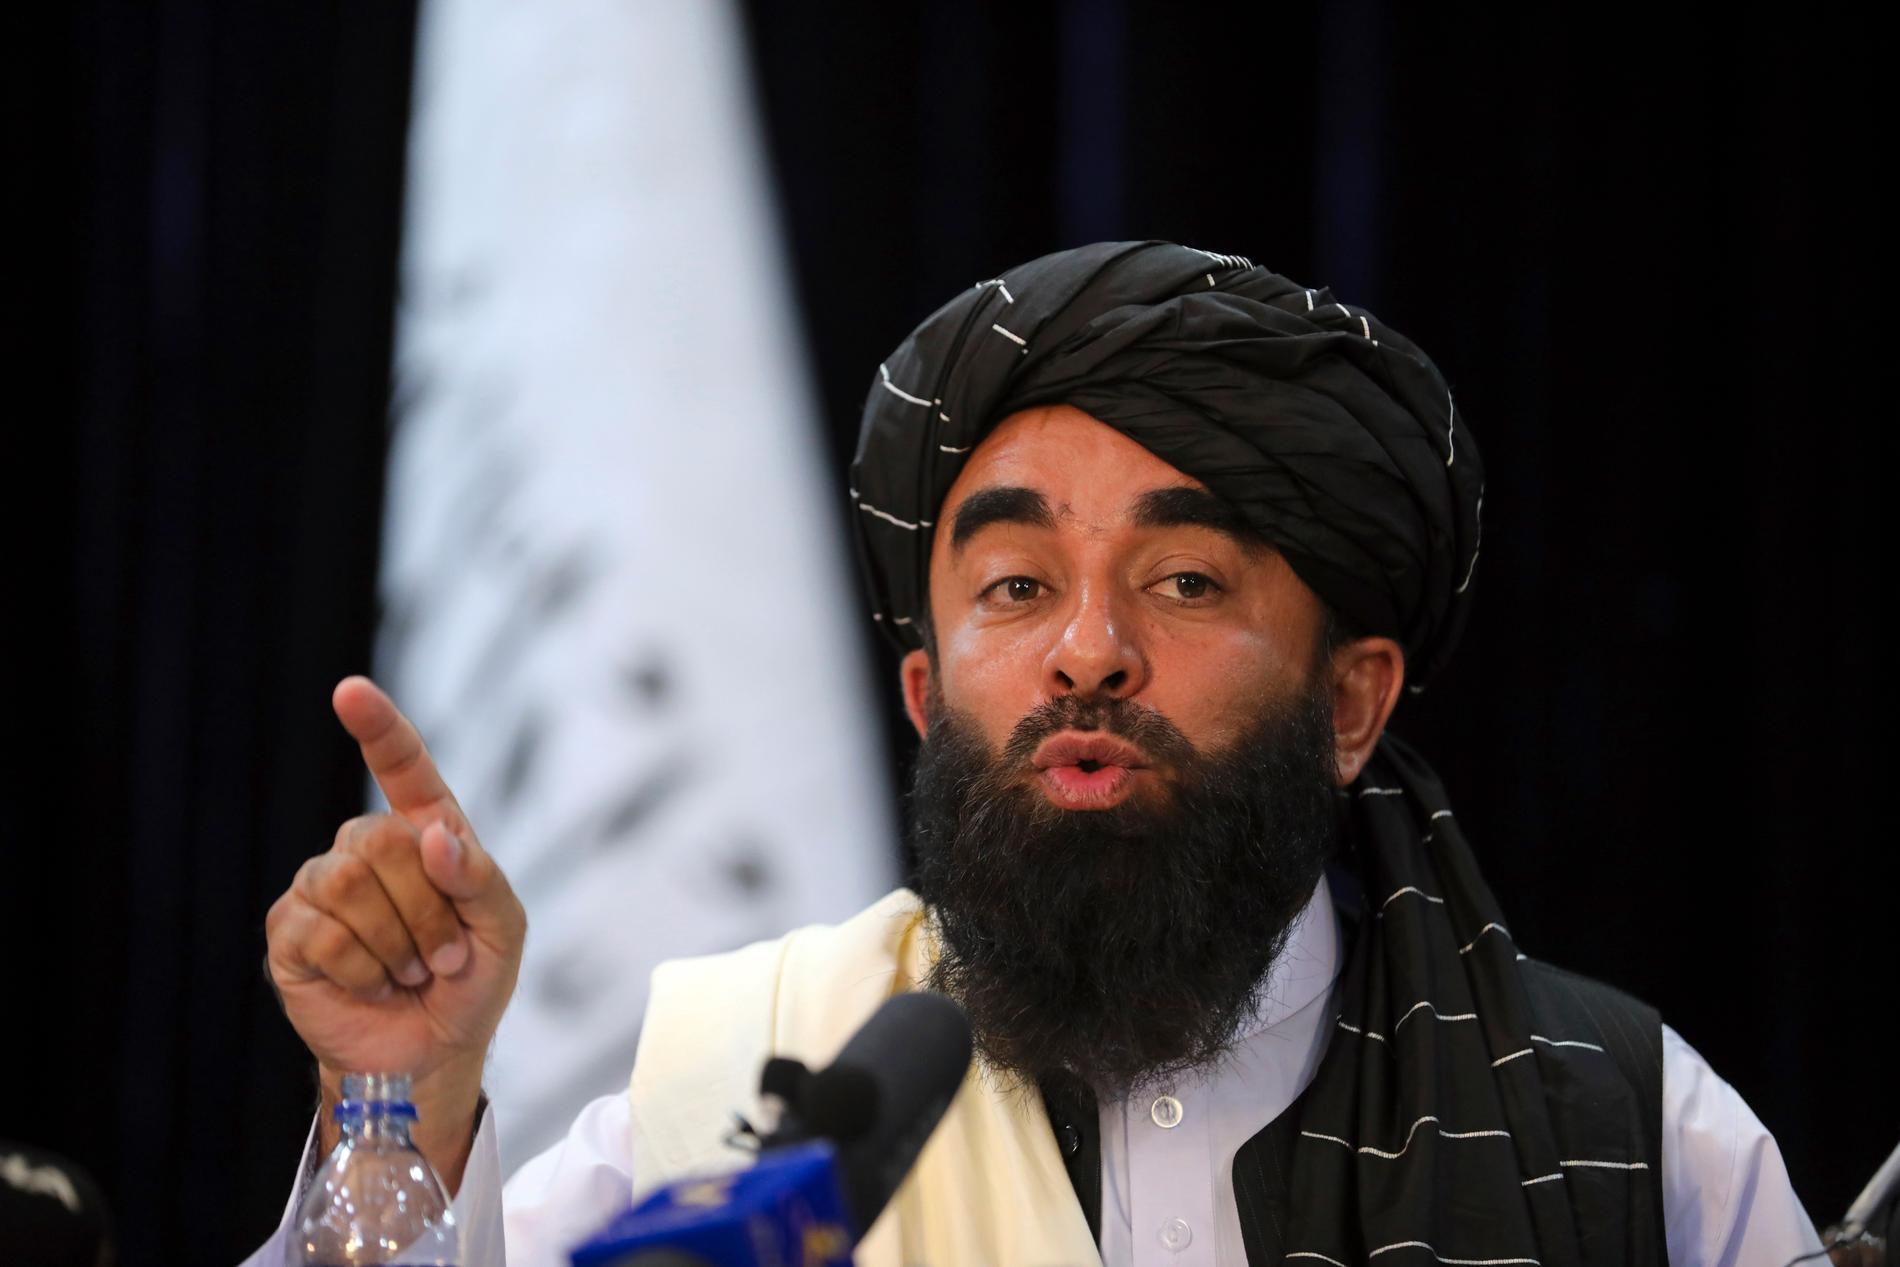 Talibanernas talespersonen Zabihullah Mujahid under presskonferensen. 